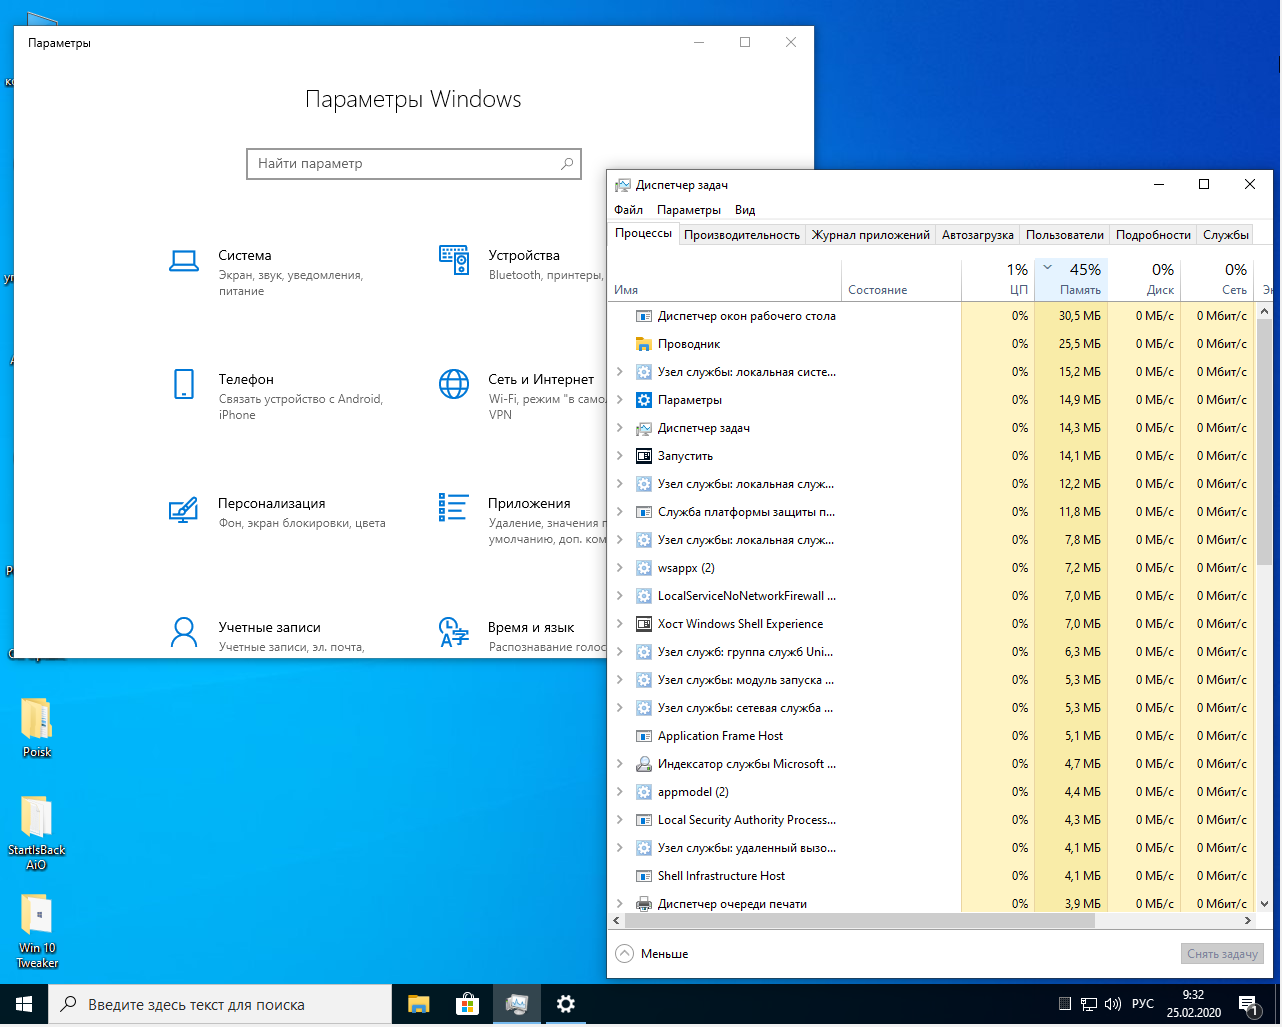 Новая сборка виндовс. Сборки виндовс для слабых ноутбуков. Самая легкая Windows. Windows 10 сборка для слабых ПК. Лёгкая версия Windows 10 для слабых ноутбуков.